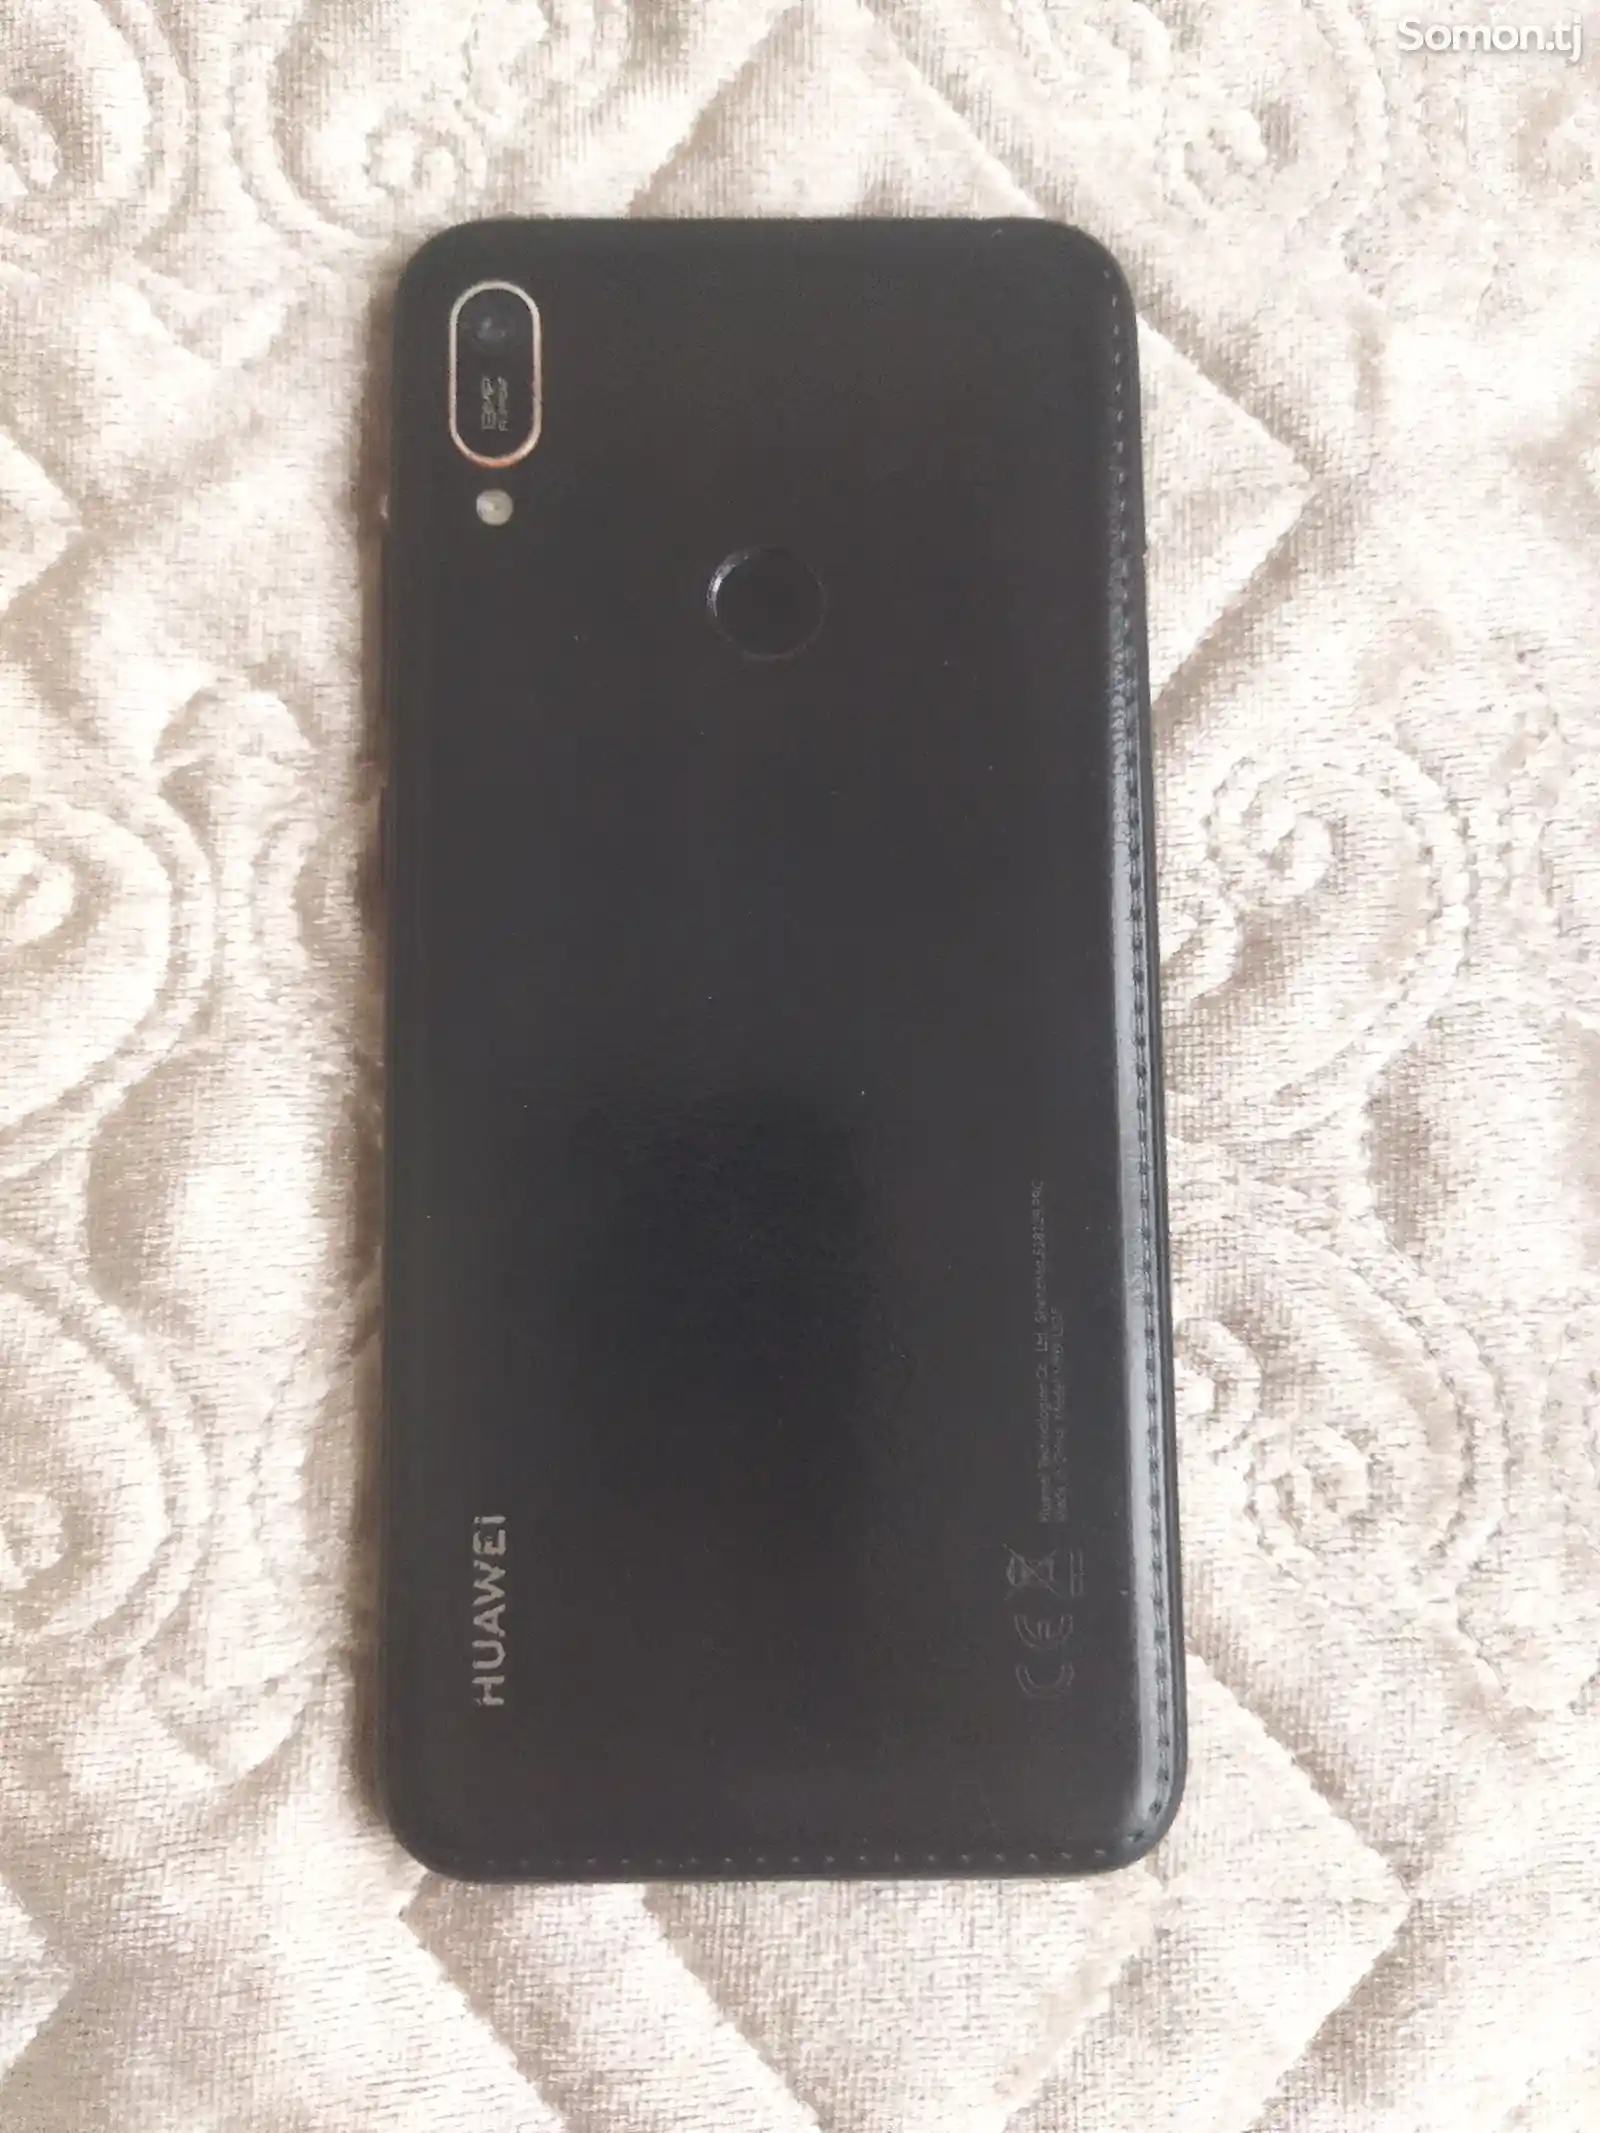 Телефон Huawei-6